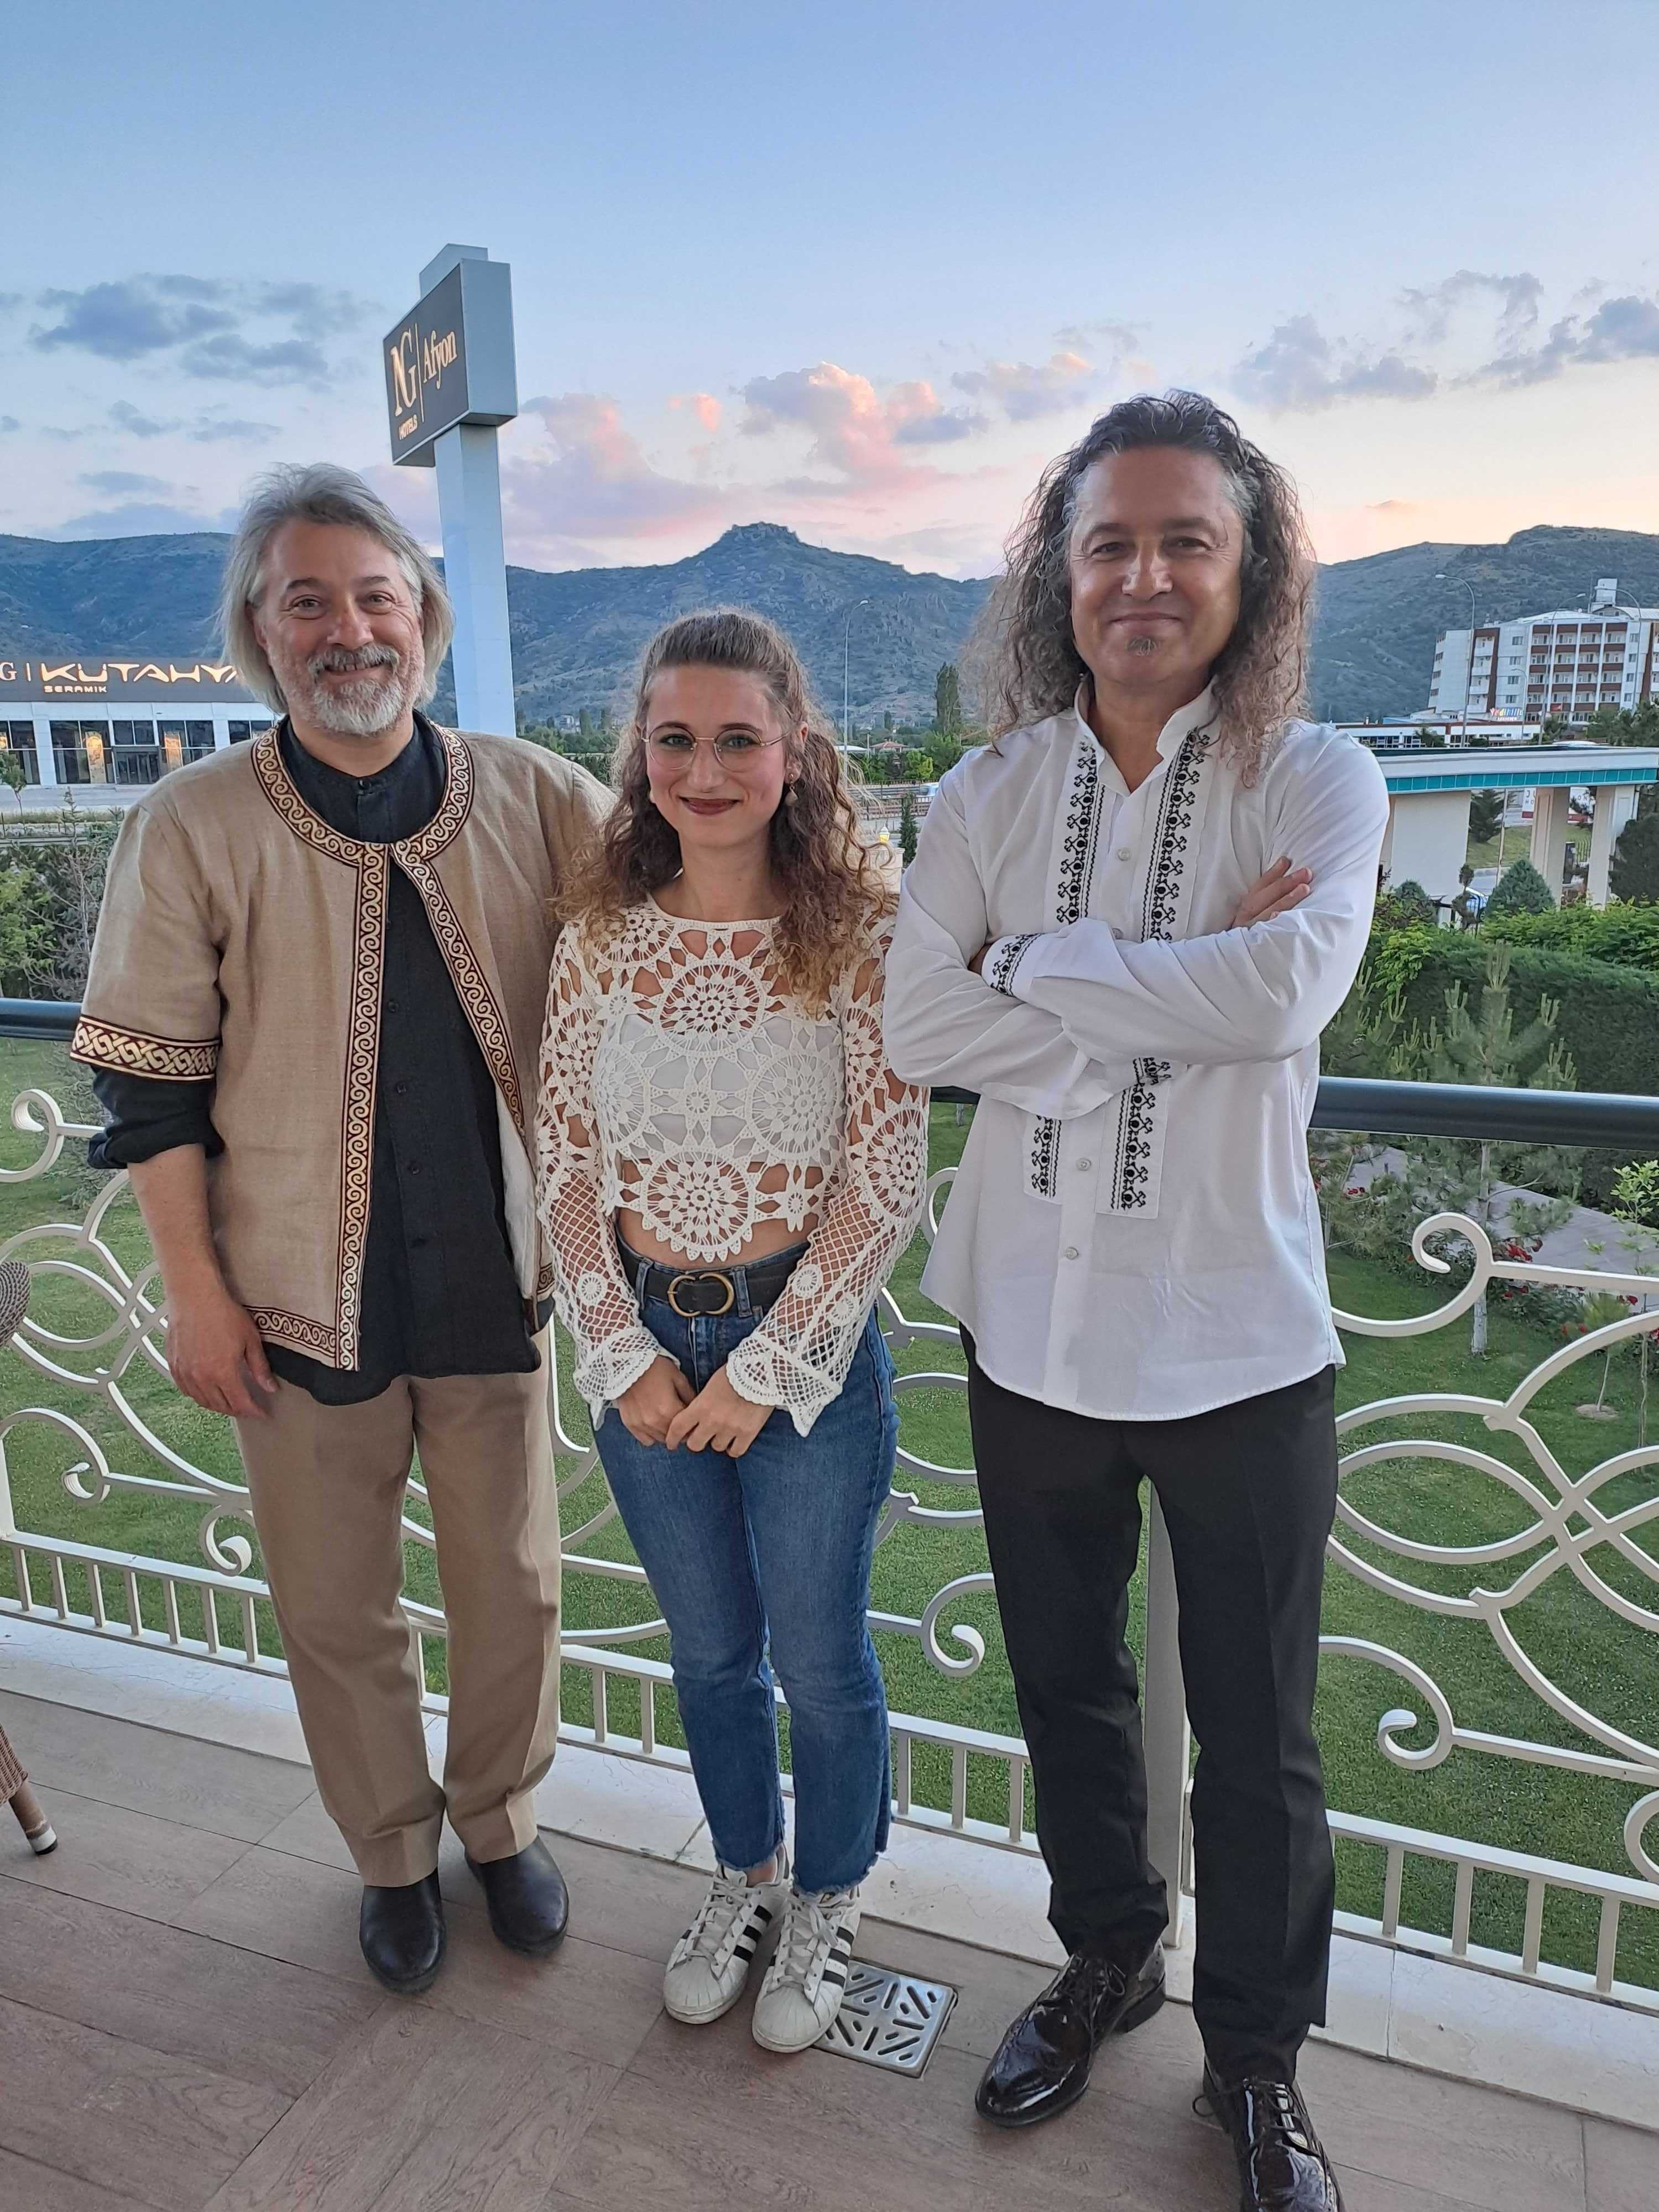 ağatay Akyol (kiri), rem Yaşar (tengah) dari Daily Sabah dan Aydın Yavaş berpose di NG Hotel, Afkonkarahisar, Turki barat, 8 Juni 2022. (Foto Sabah Harian)